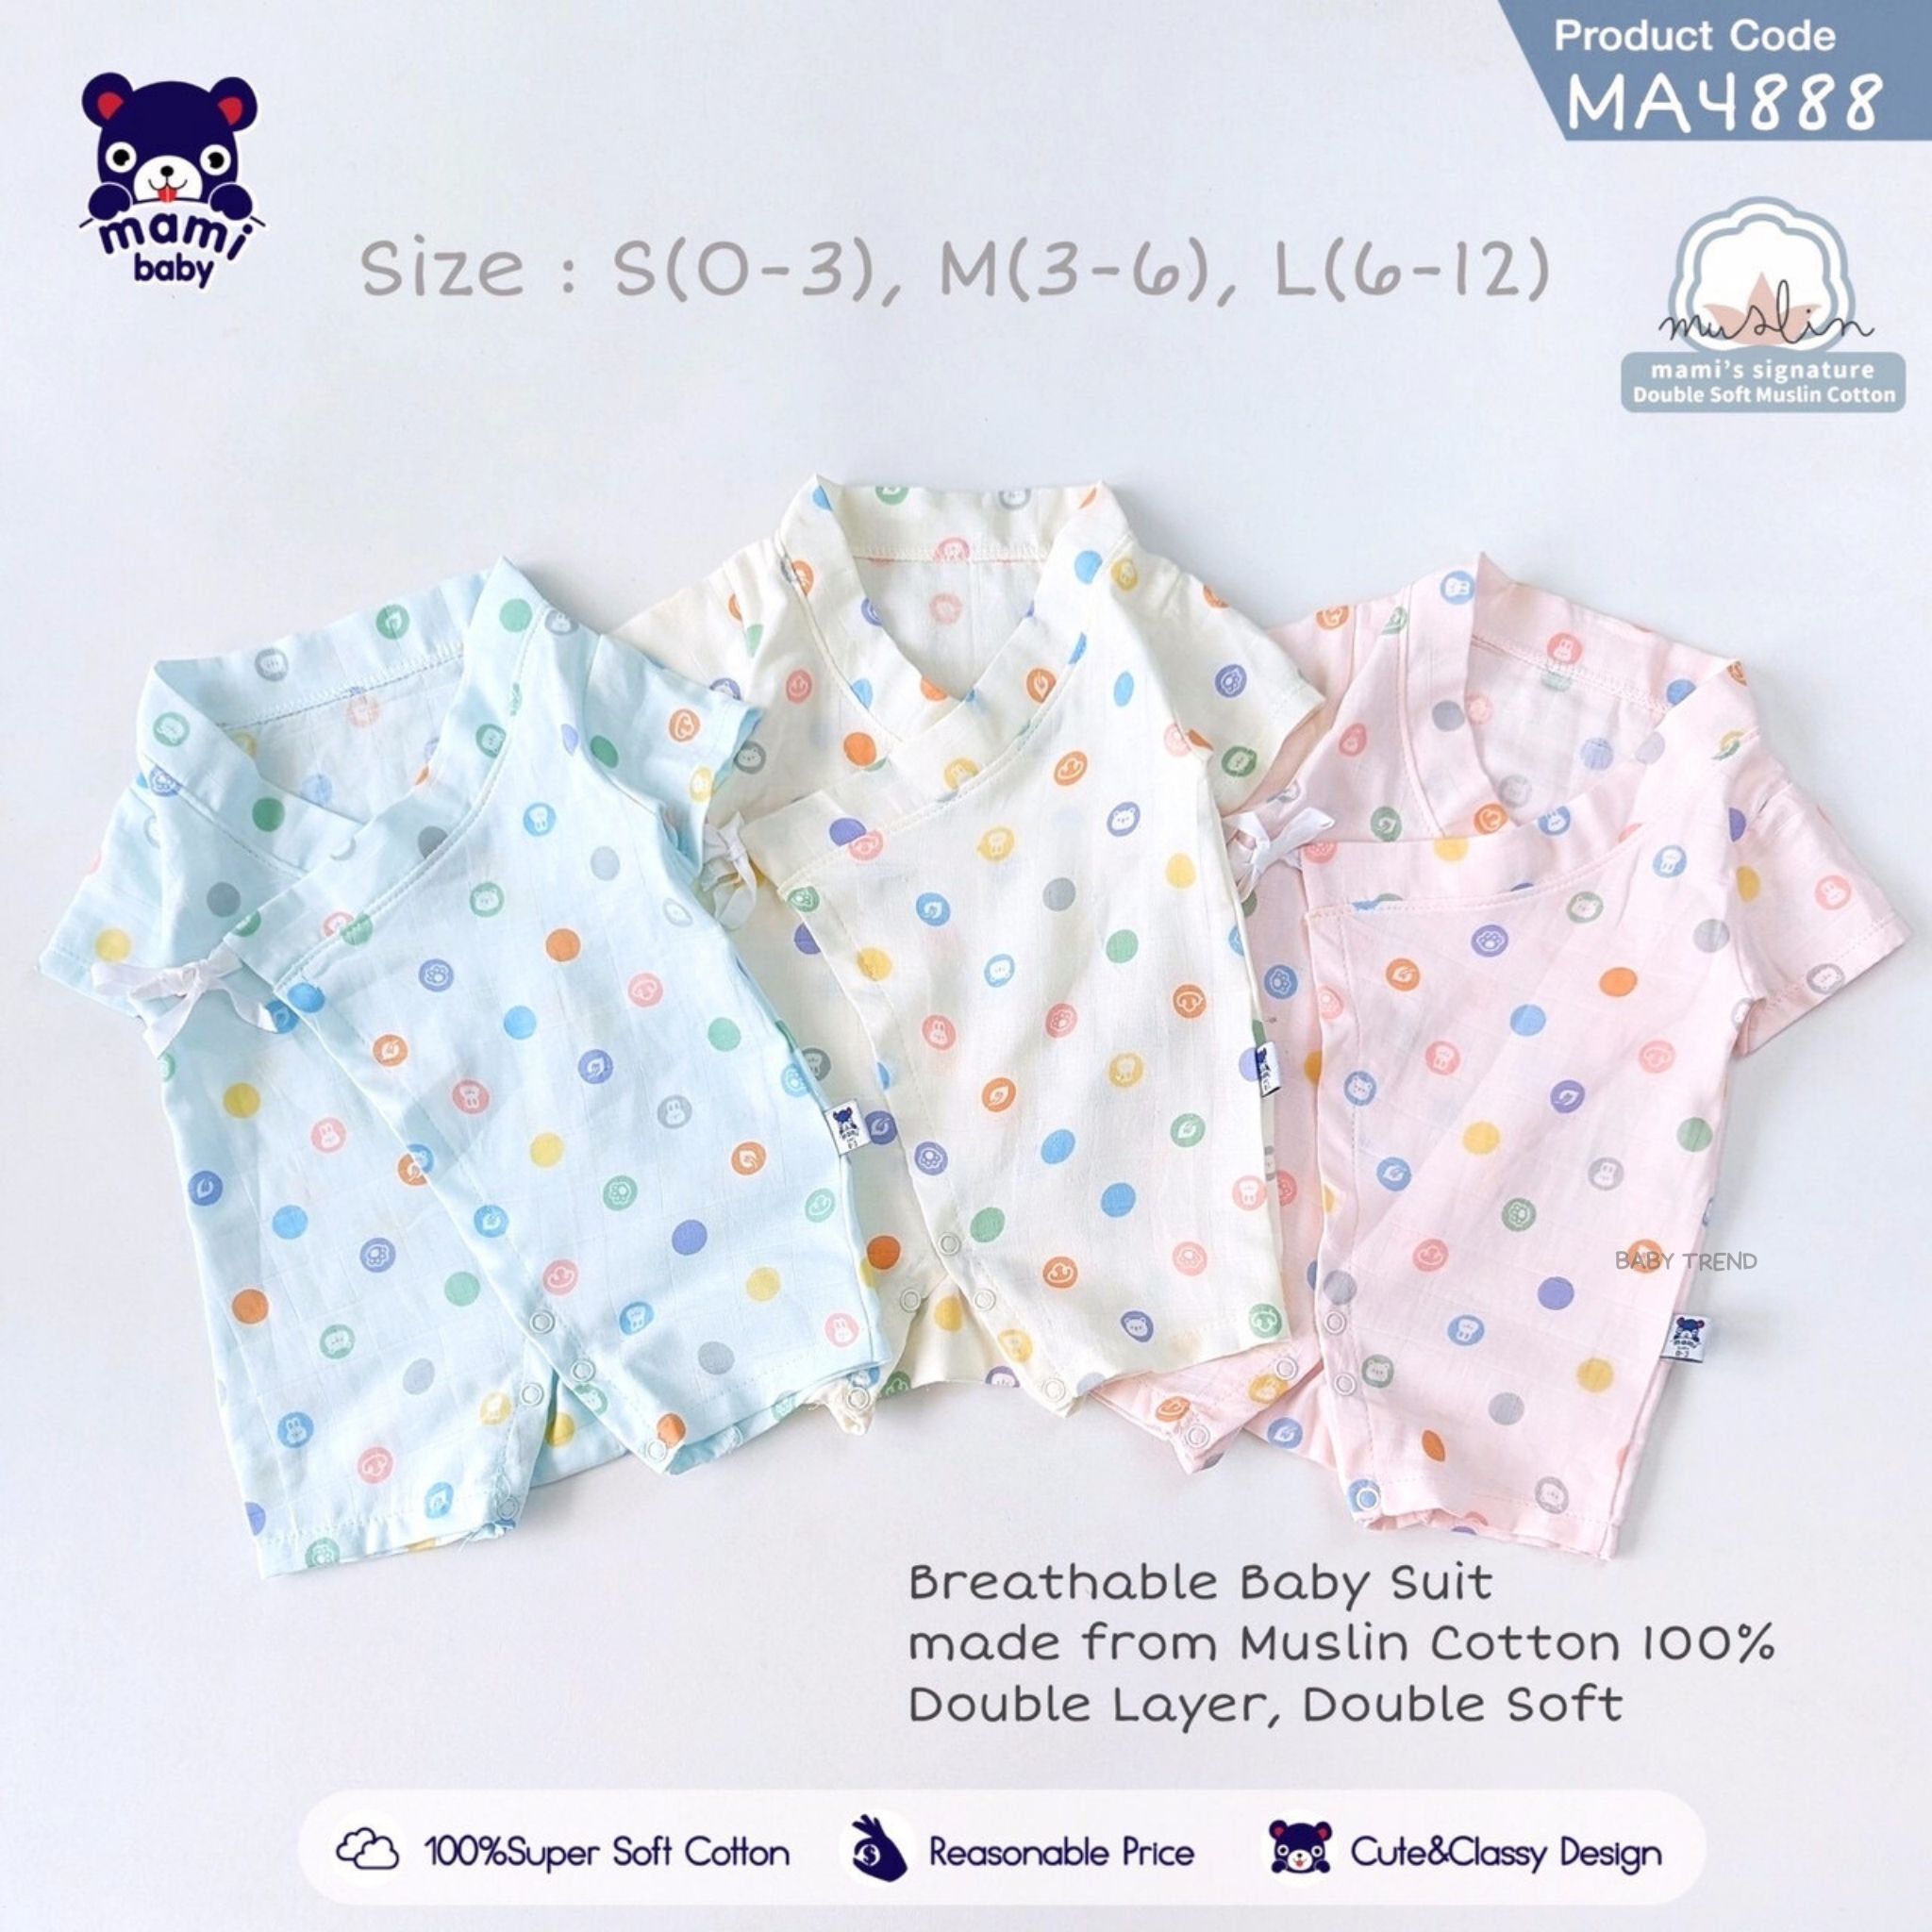 บอดี้สูทและชุดหมี Mami Baby ชุดยูกาตะผ้ามัสลิน โปร่งสบาย ชุดบอดี้สูทผูกหน้าเด็กอ่อน ขนาด 0-3, 3-6, 6-12 เดือน